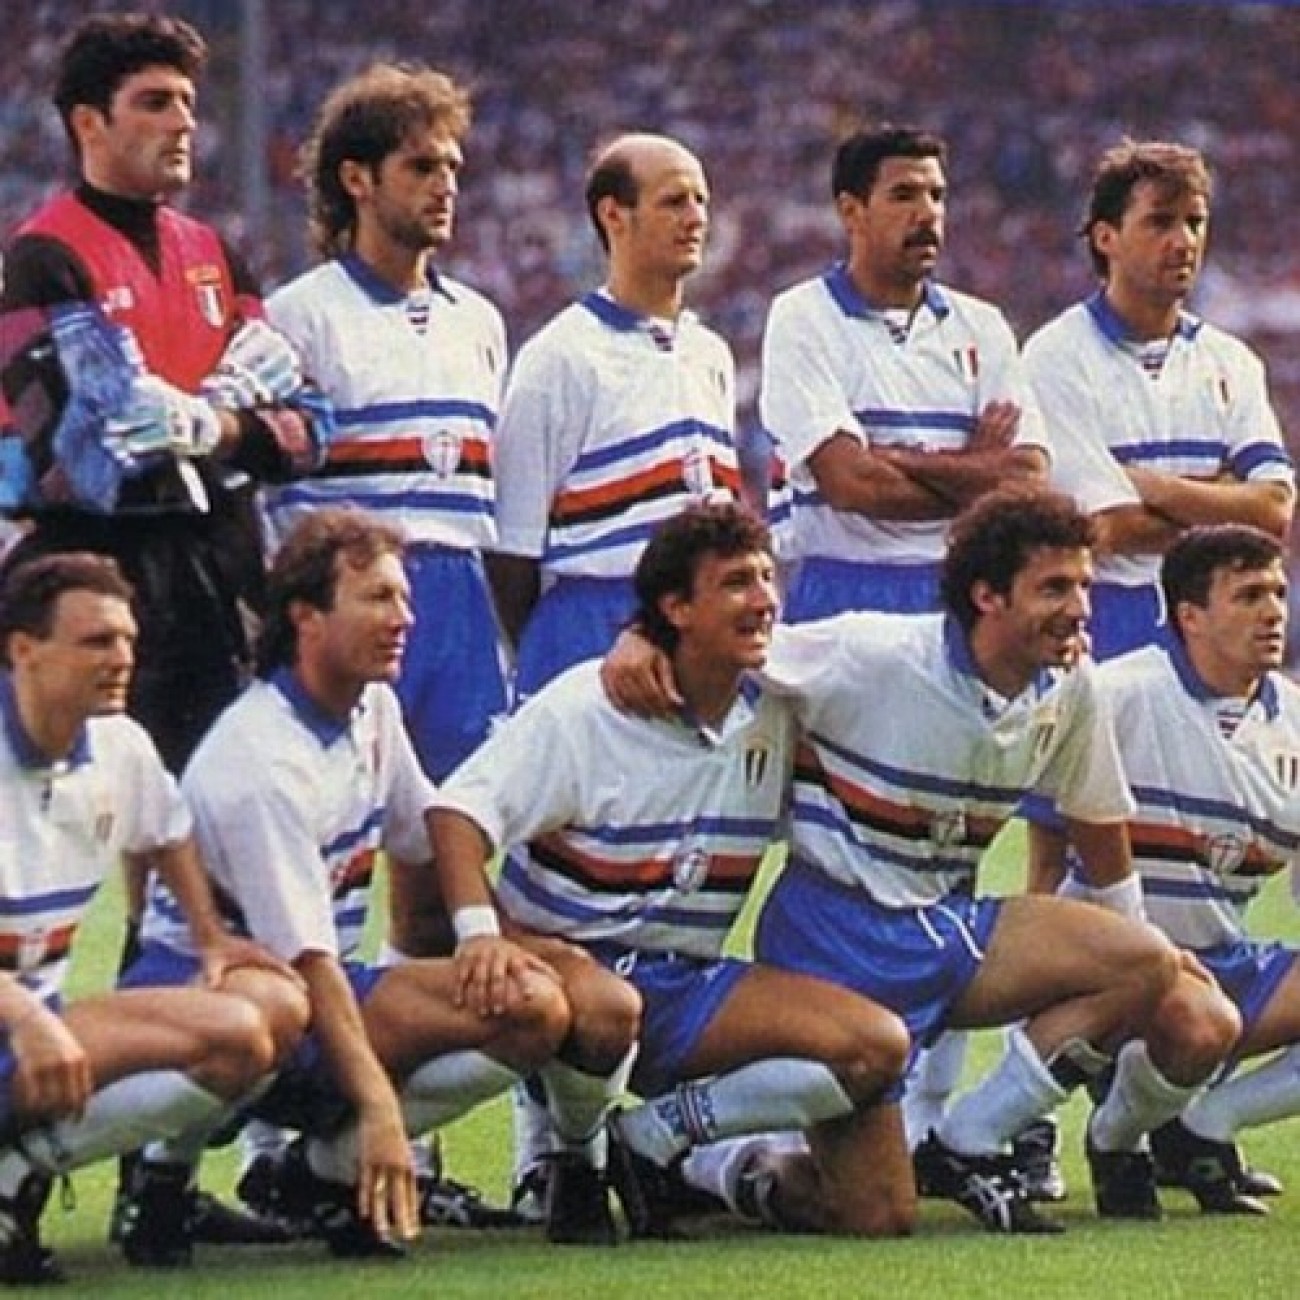 Copa U U.C Sampdoria 1991-92 Retro Football Shirt Sampdoria 1991-92 Maillot de Football rétro Homme C 